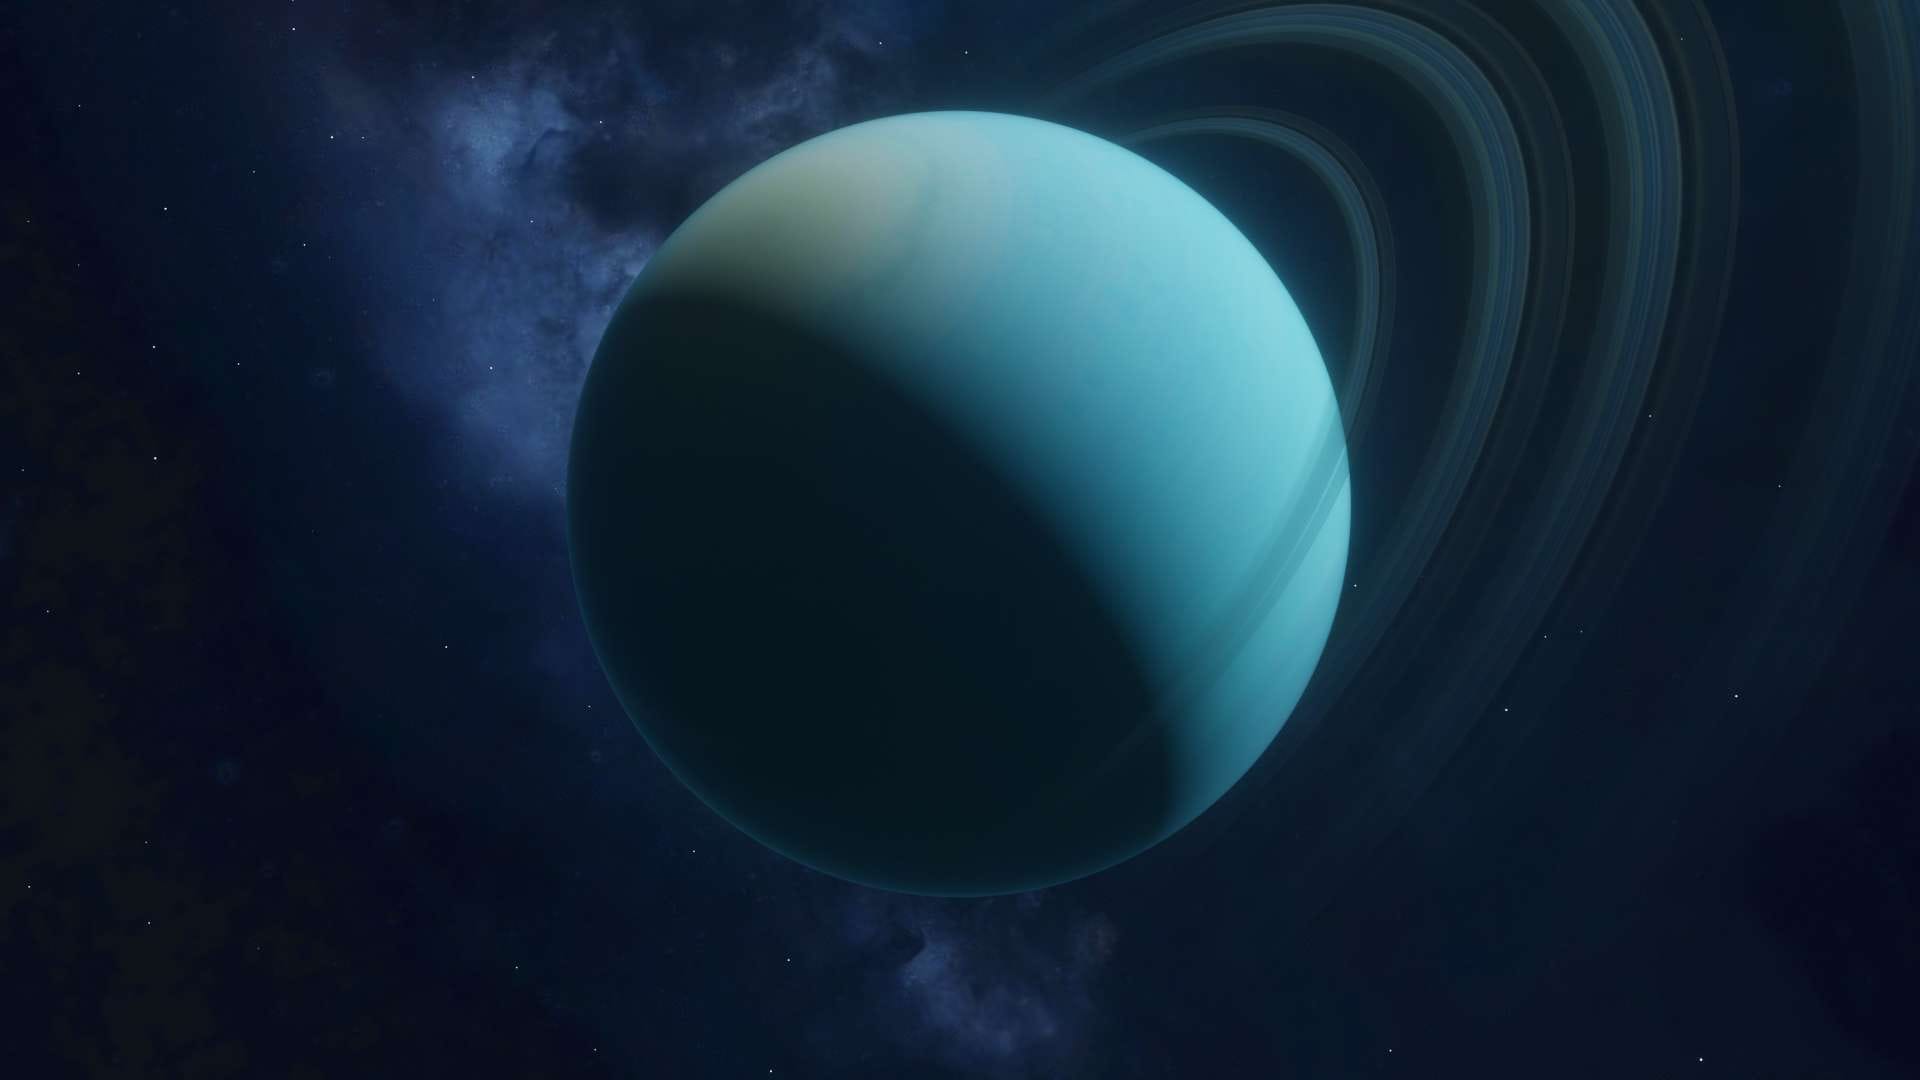 Planeet Uranus: de koudste planeet